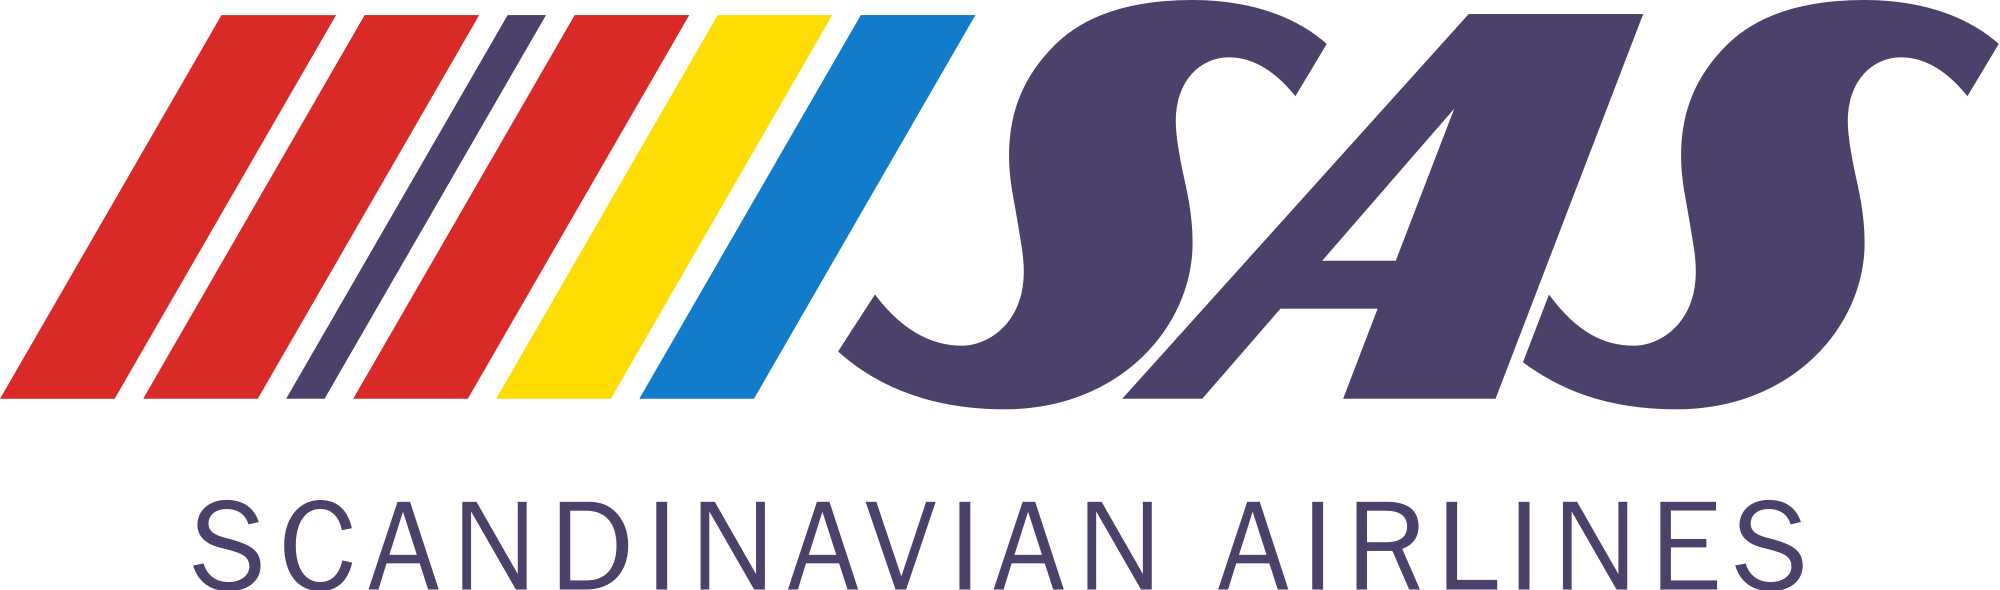 Scandinavian Airlines (SAS)